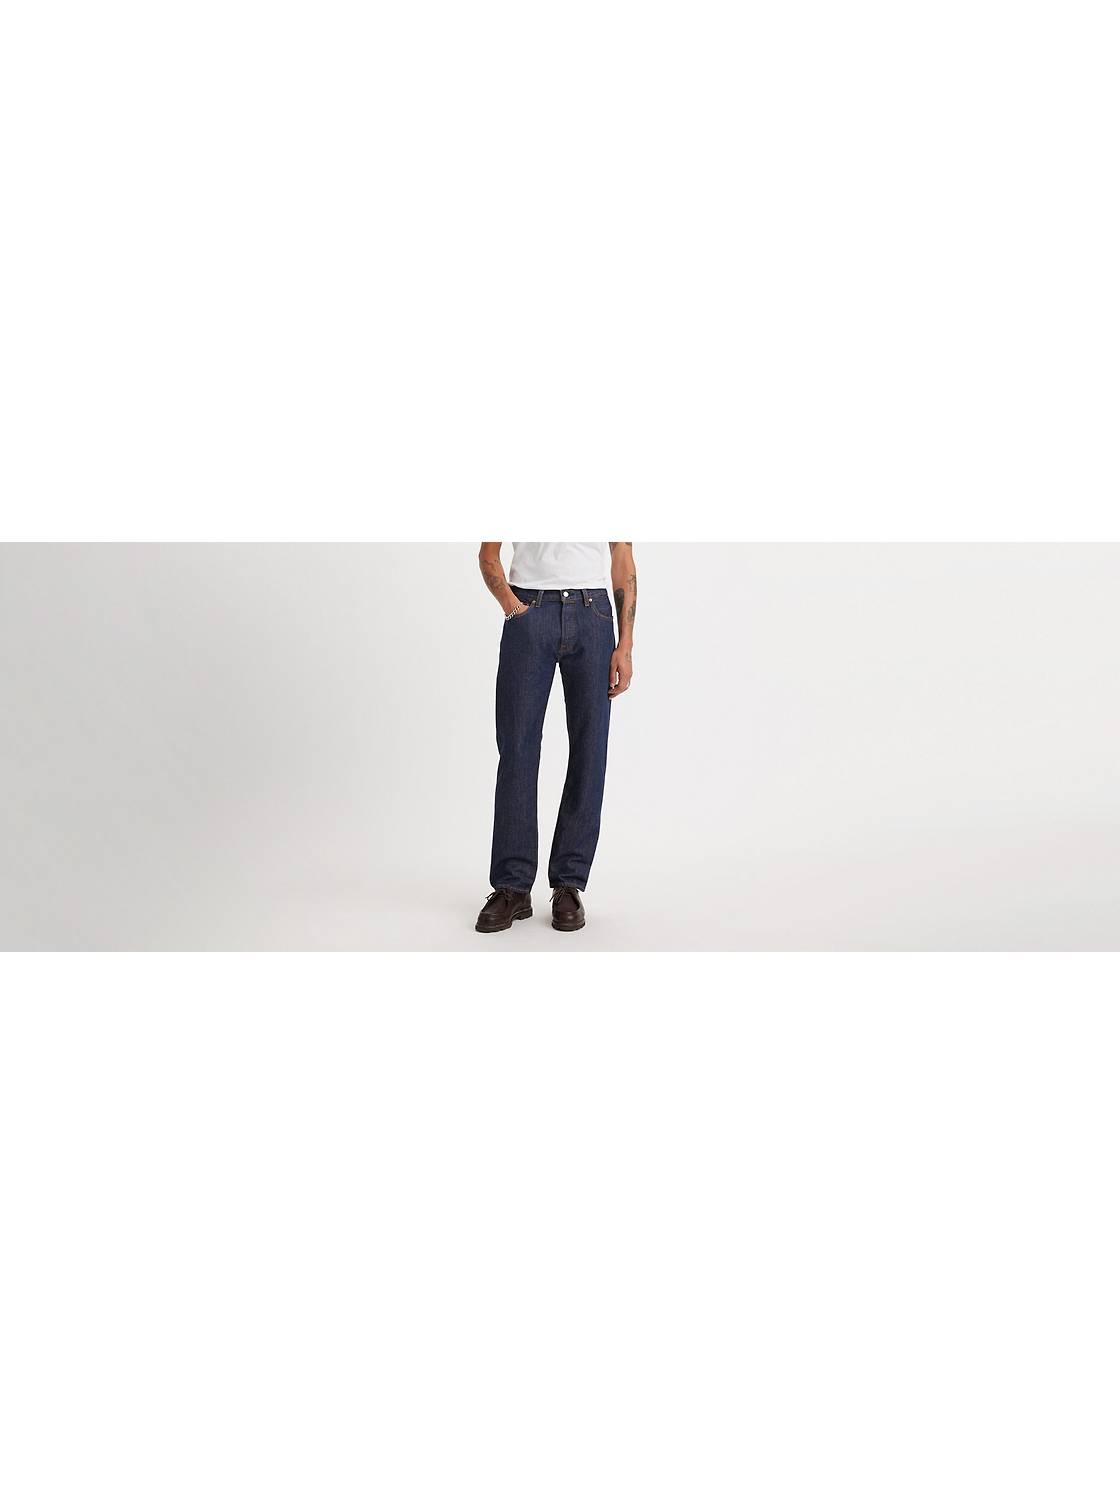 Men's Jeans: Shop the Jeans Men Levi's® US